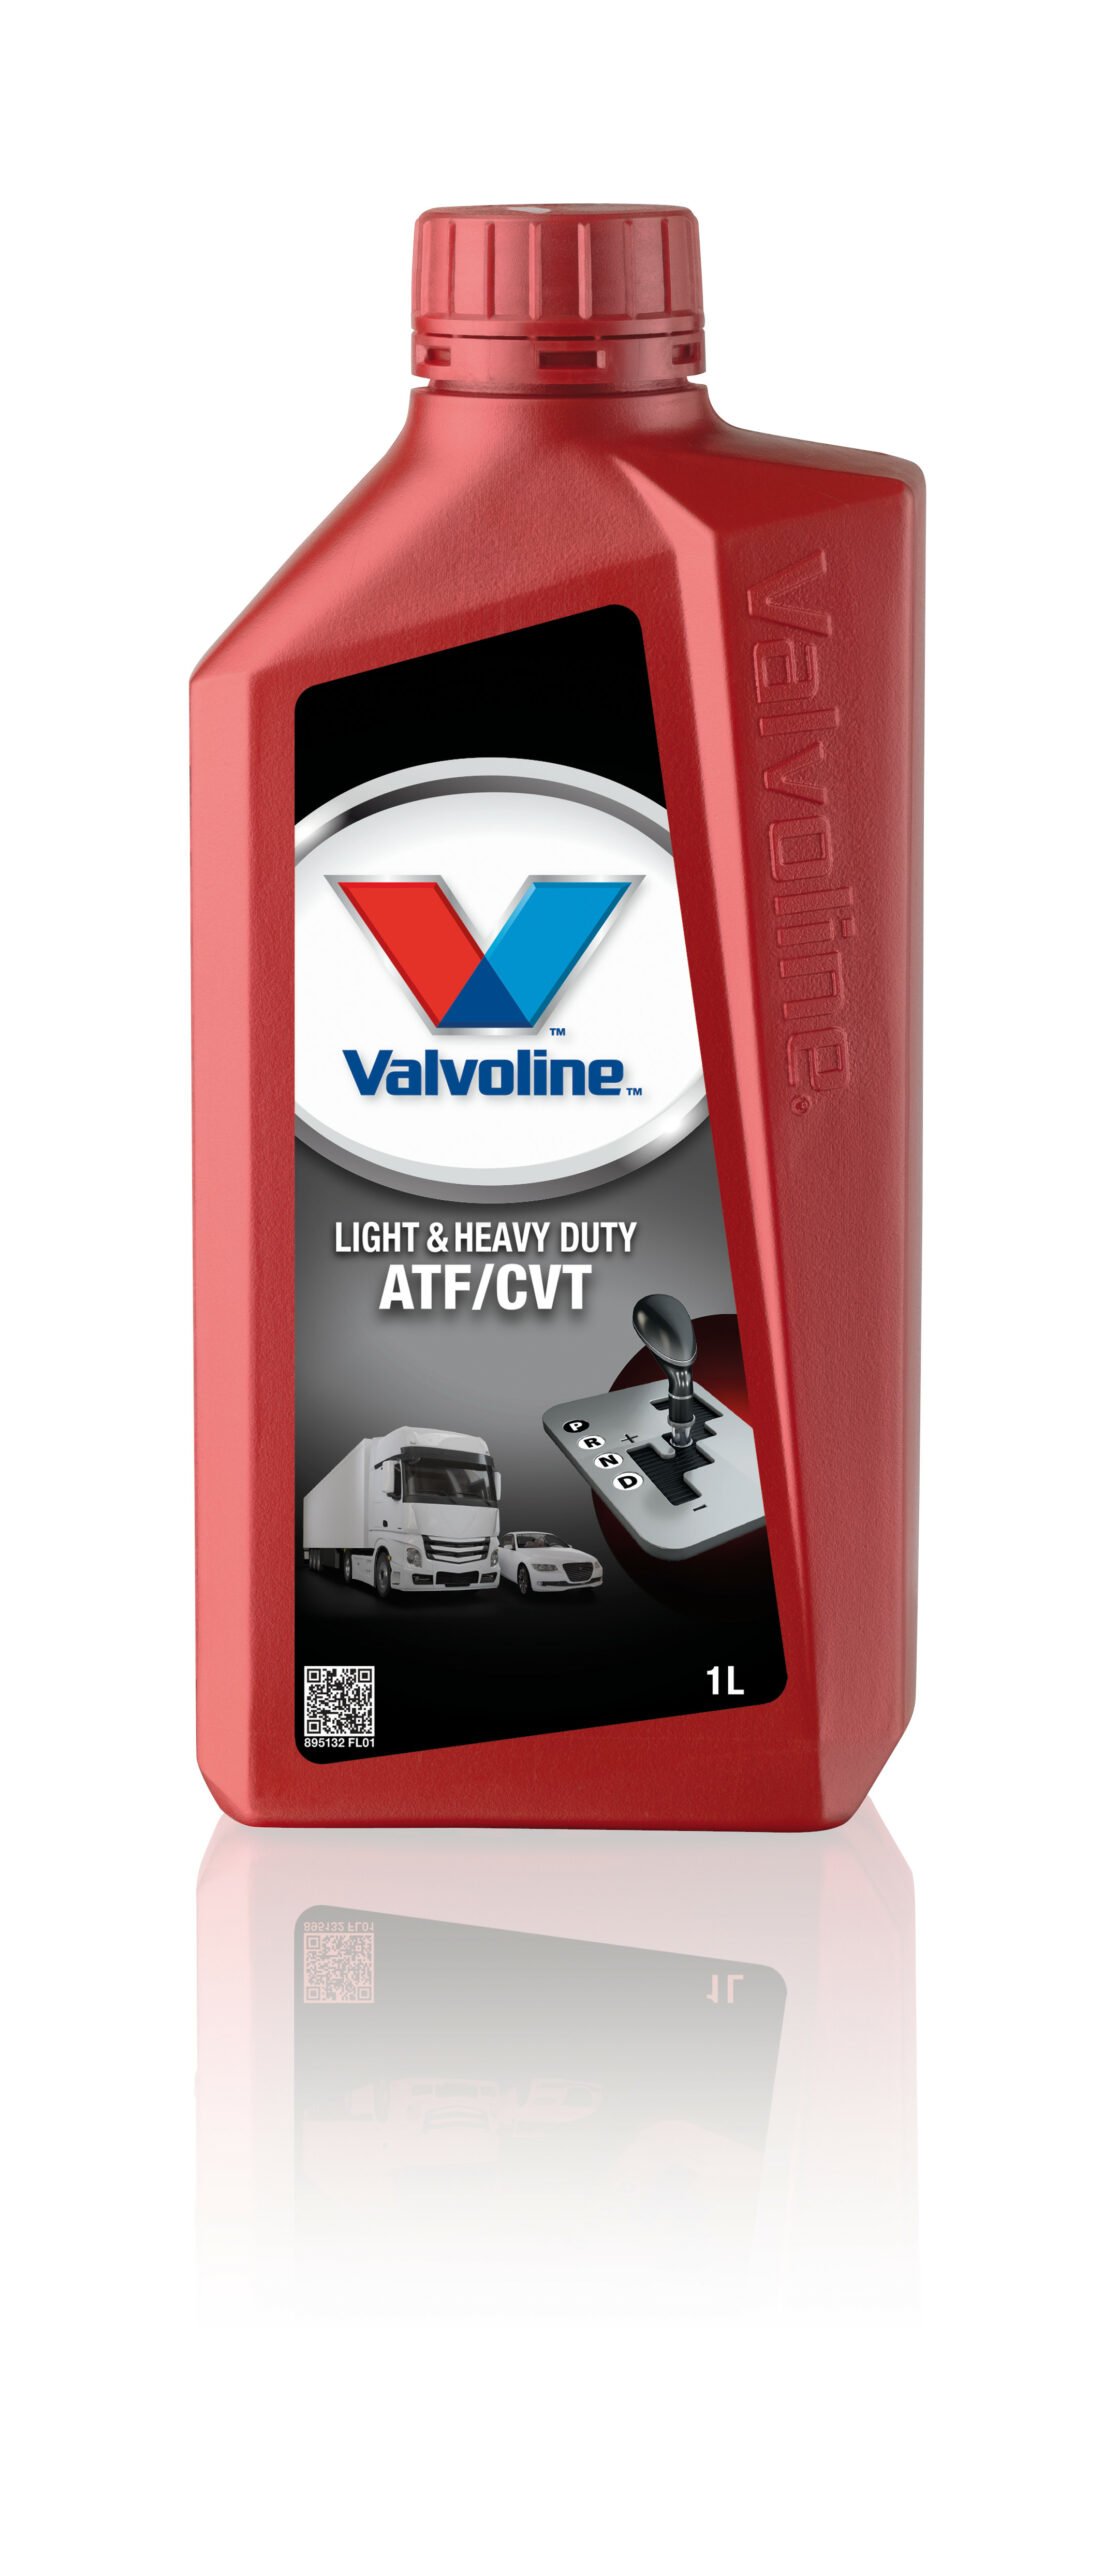 Valvoline разработала новую жидкость для АКП и вариаторов